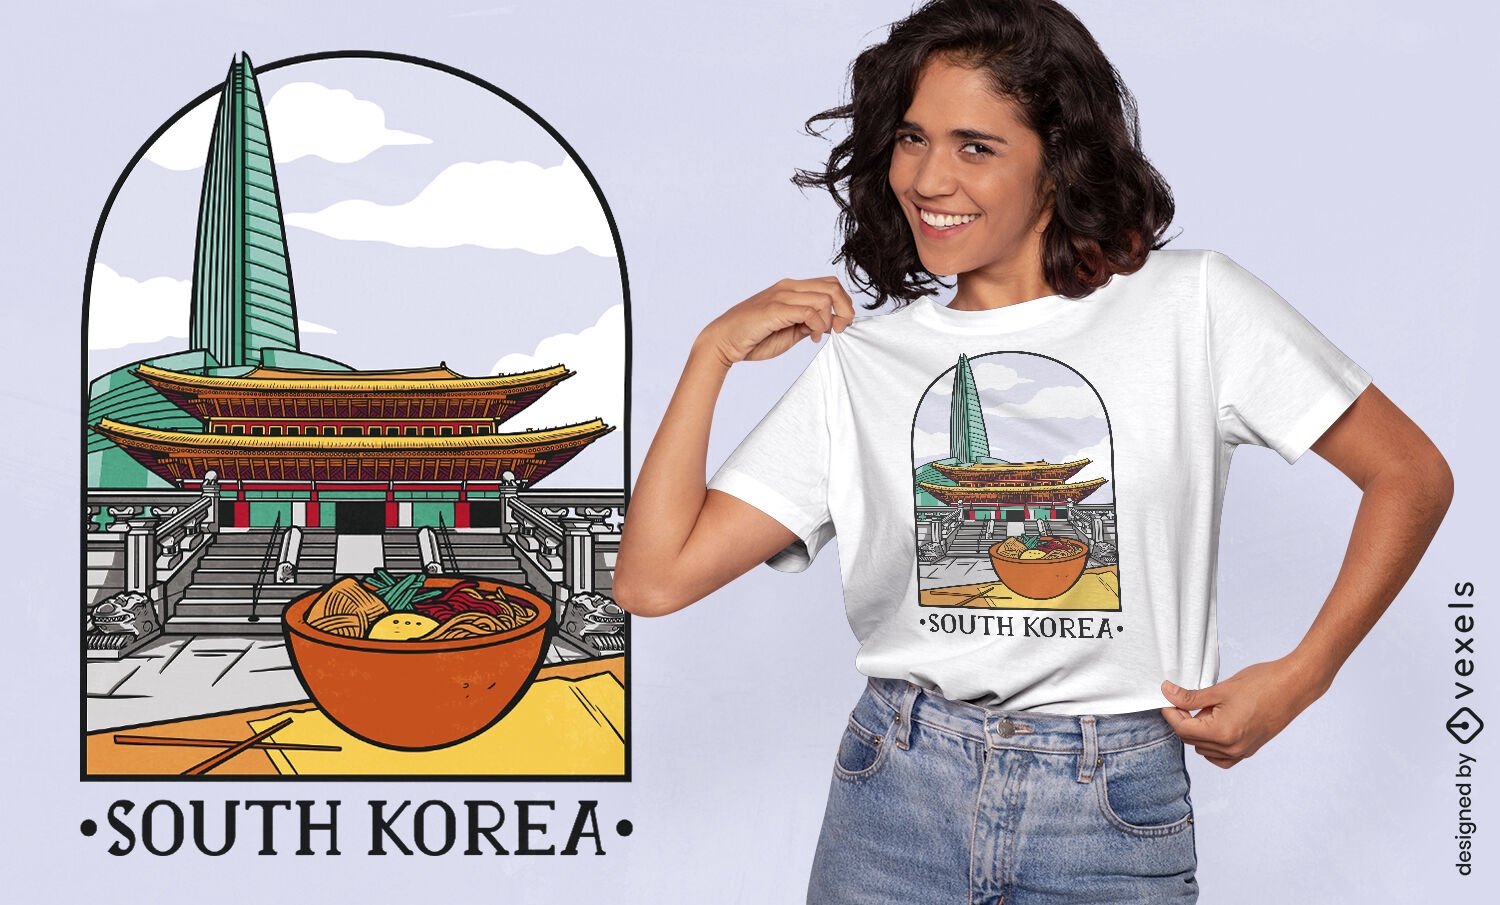 Puntos de referencia de Corea del Sur y dise?o de camisetas de comida.